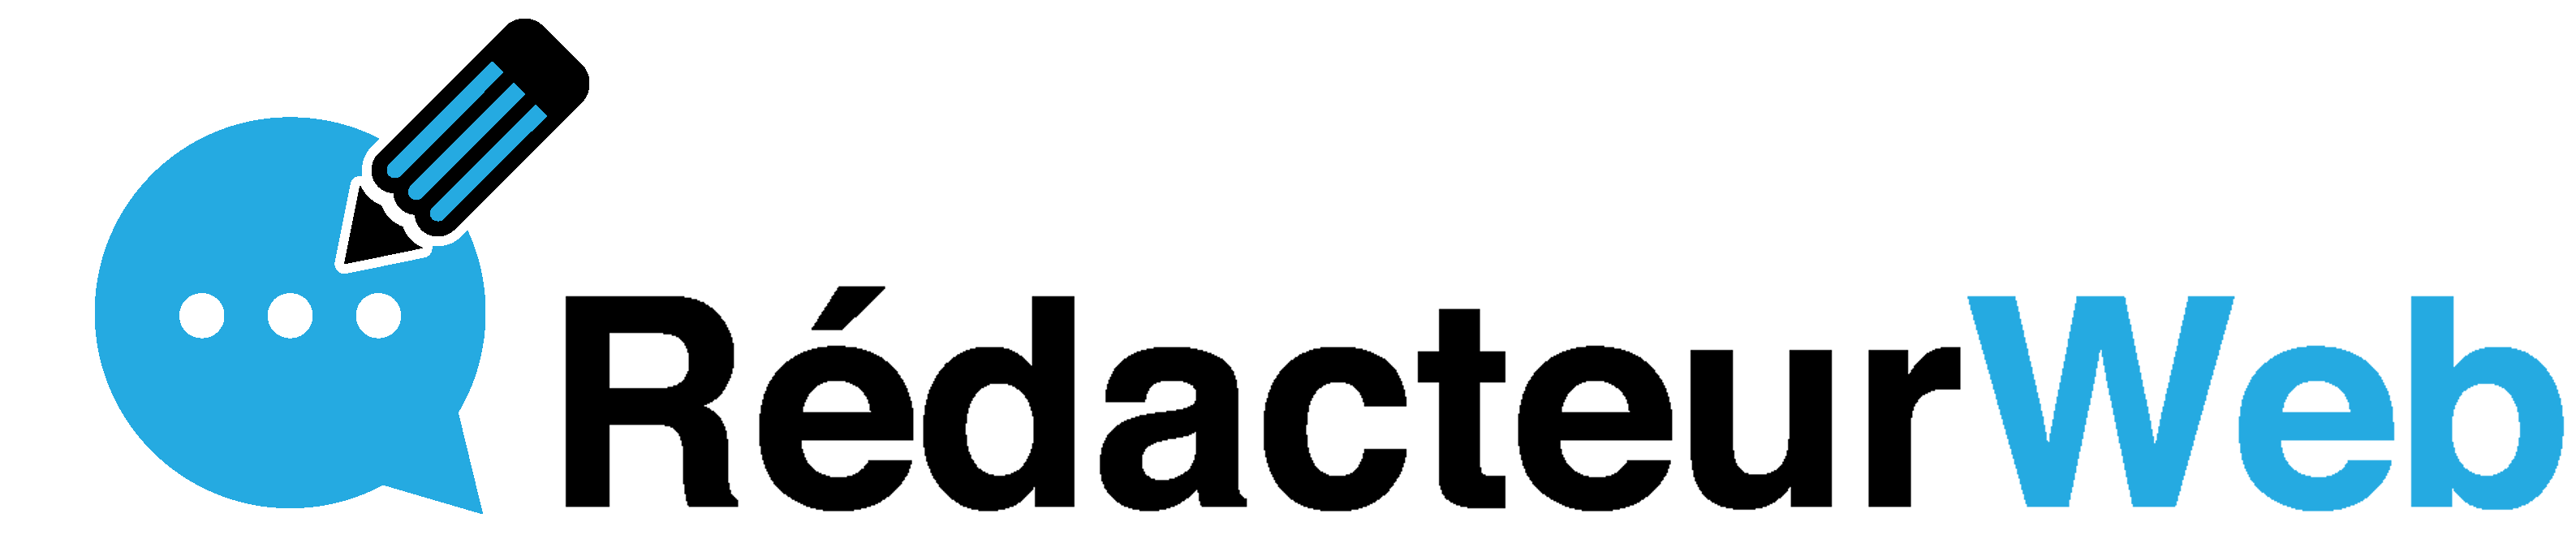 Rédacteur Web logo Bf